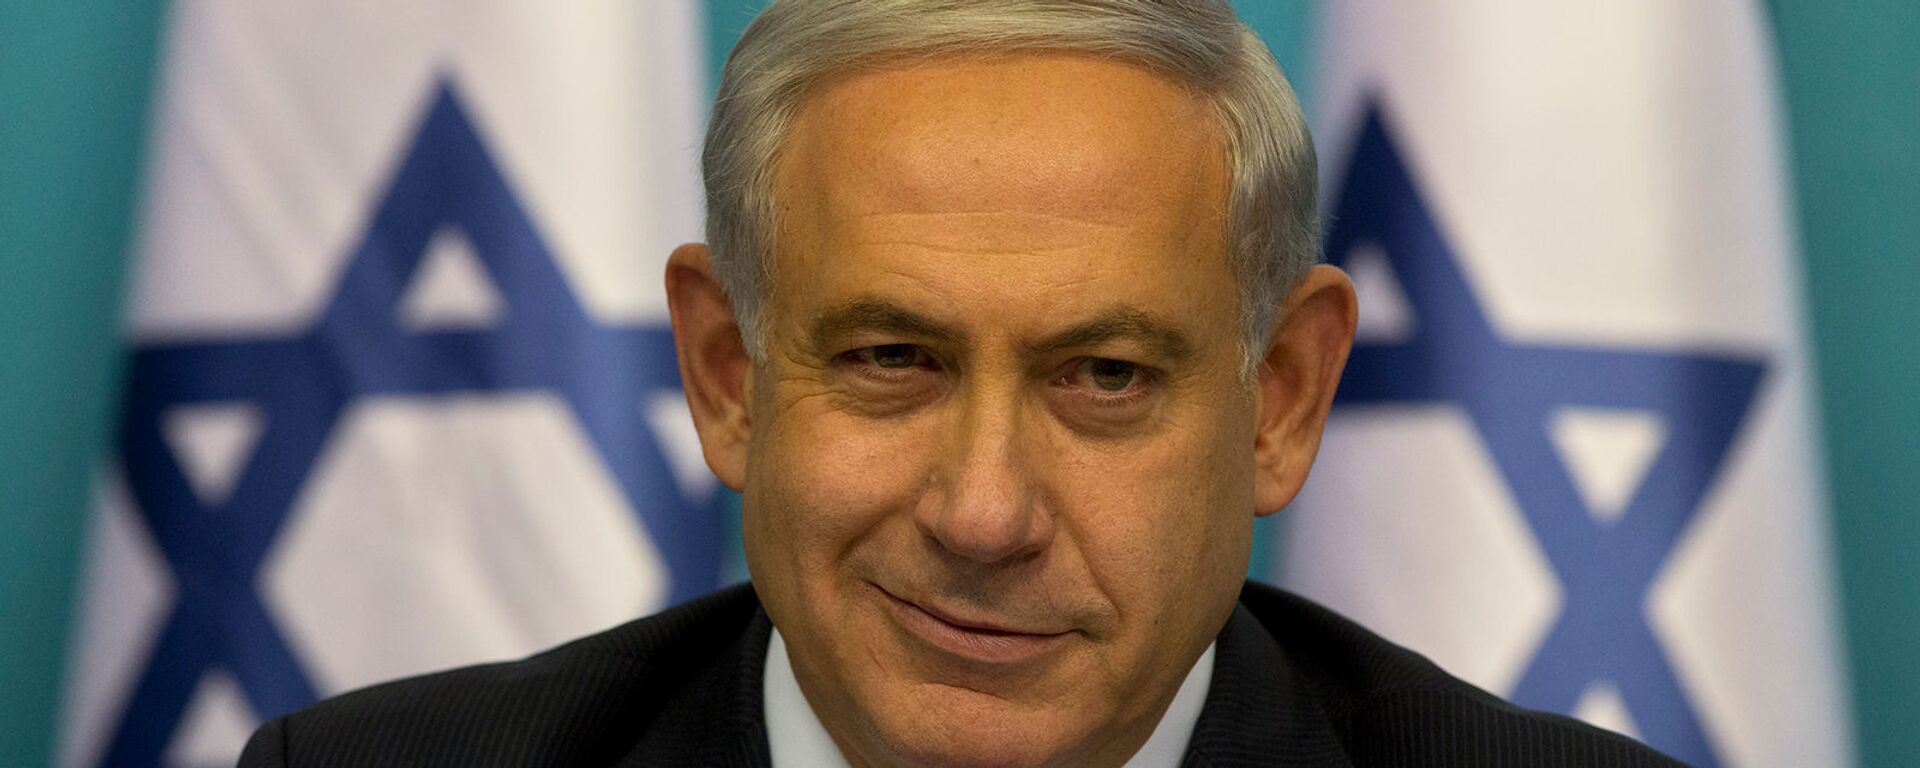 Премьер-министр Израиля Биньямин Нетаньяху во время пресс-конференции (27 августа 2014). Иерусалим - Sputnik Արմենիա, 1920, 23.03.2021